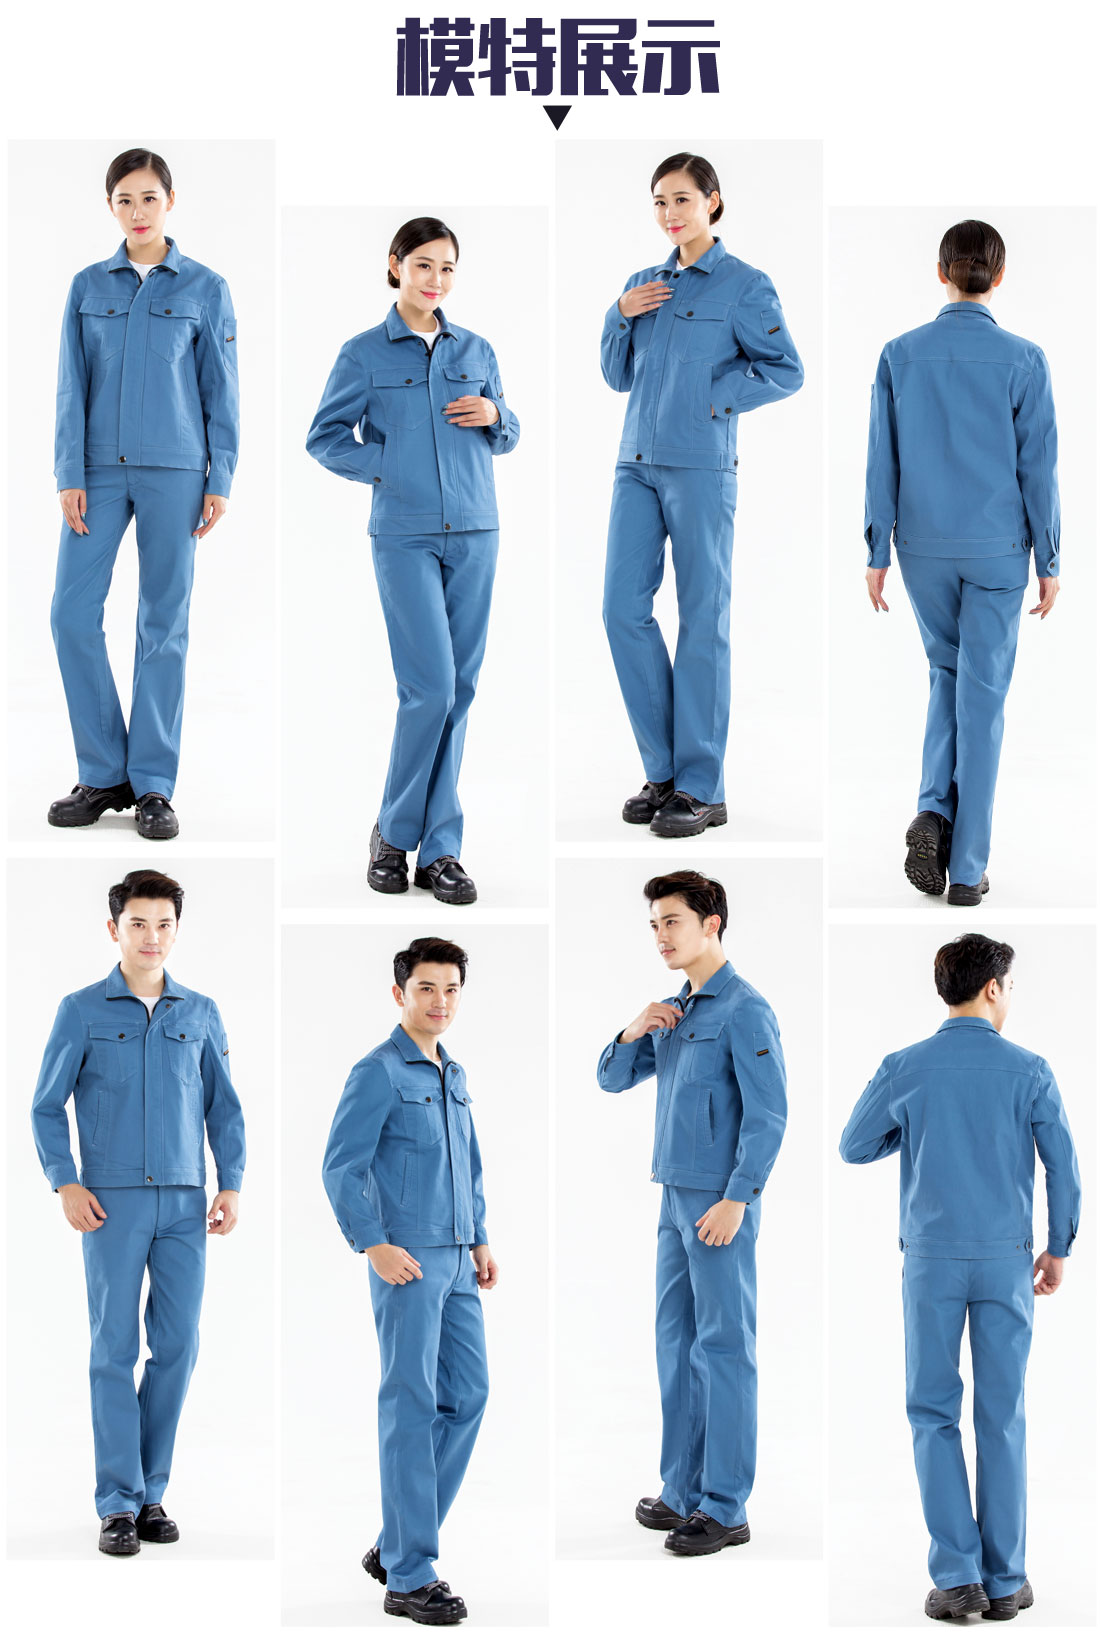 新款浅蓝色秋季工作服的模特展示